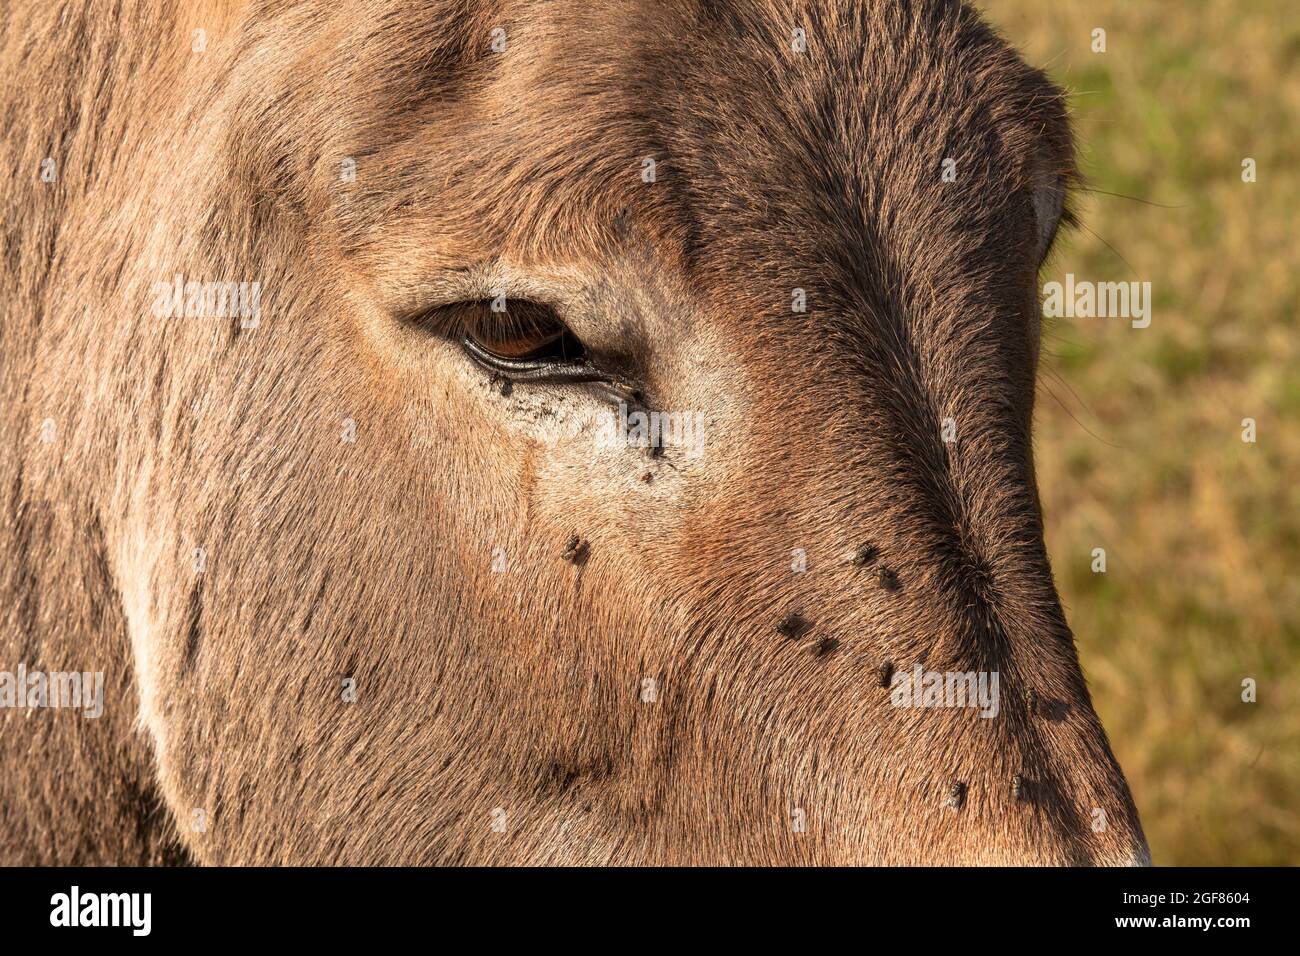 Fliegen trinken Tränenflüssigkeit am Auge eines Esels, Wahner Heath, Köln, Deutschland. Fliegen trinken am Auge eines Esels Traenfluessigkeit, Wahner Heide, Stockfoto